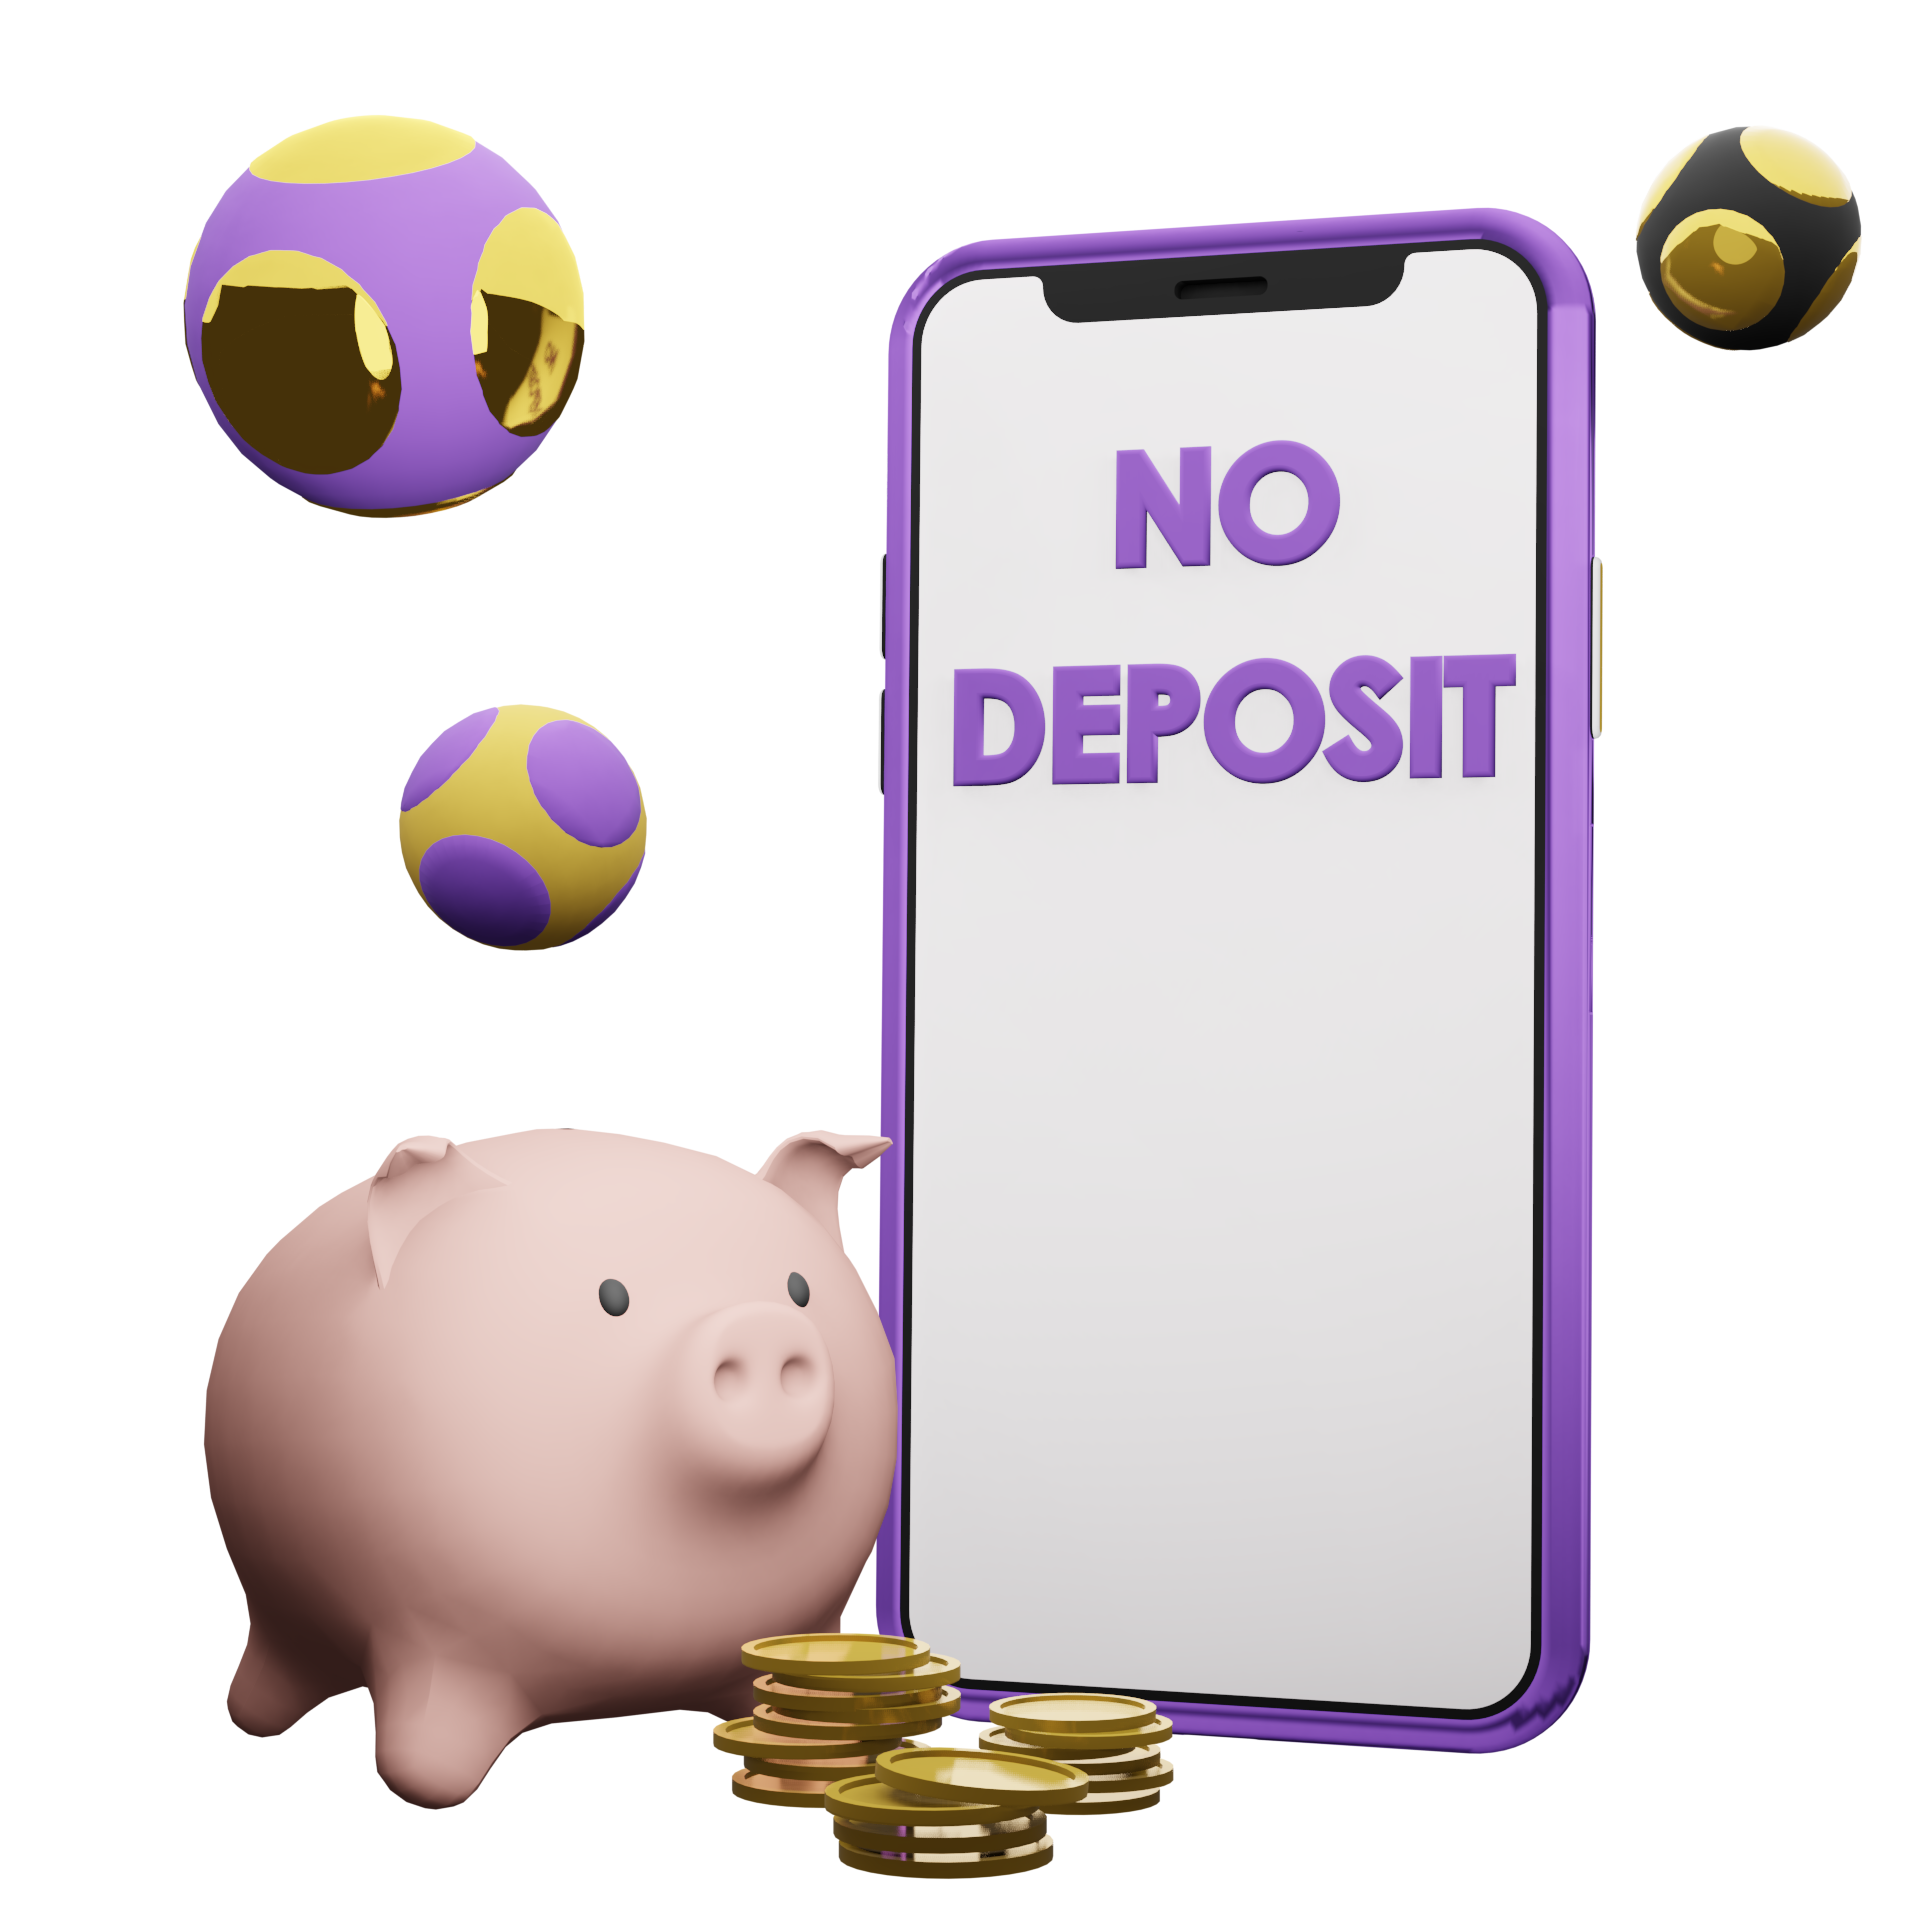 mobile bingo sites no deposit bonus